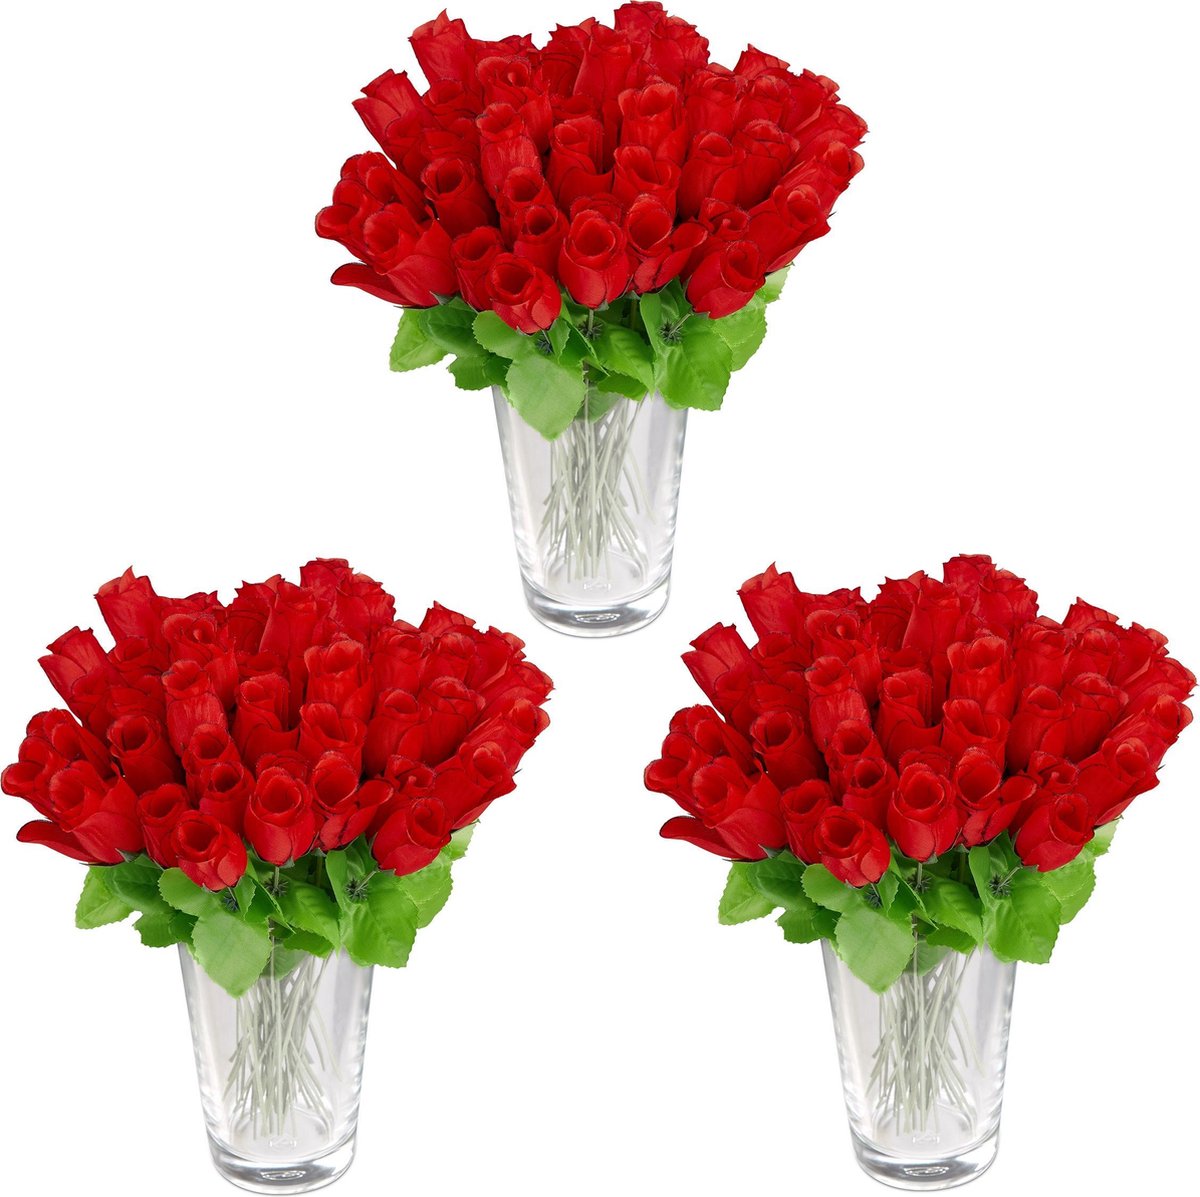 Relaxdays 144x kunstrozen rood kunstbloemen decoratie nep bloemen